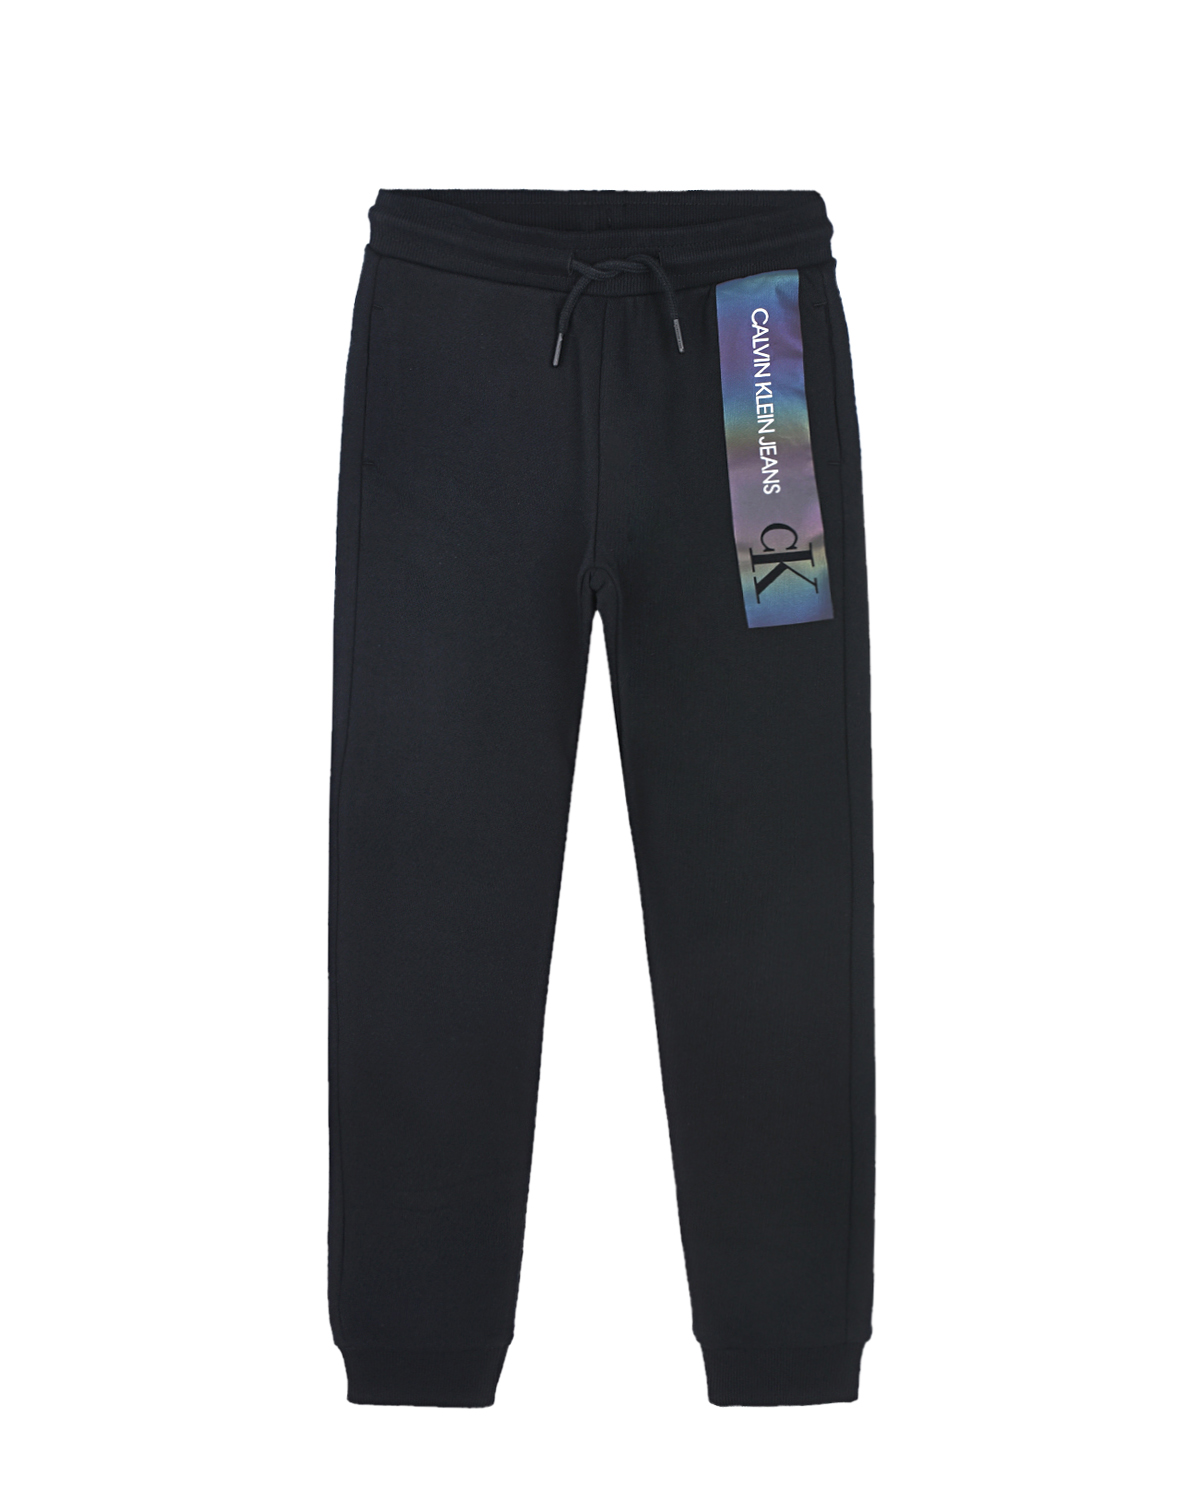 Черные спортивные брюки с логотипом Calvin Klein детские, размер 104, цвет черный - фото 1